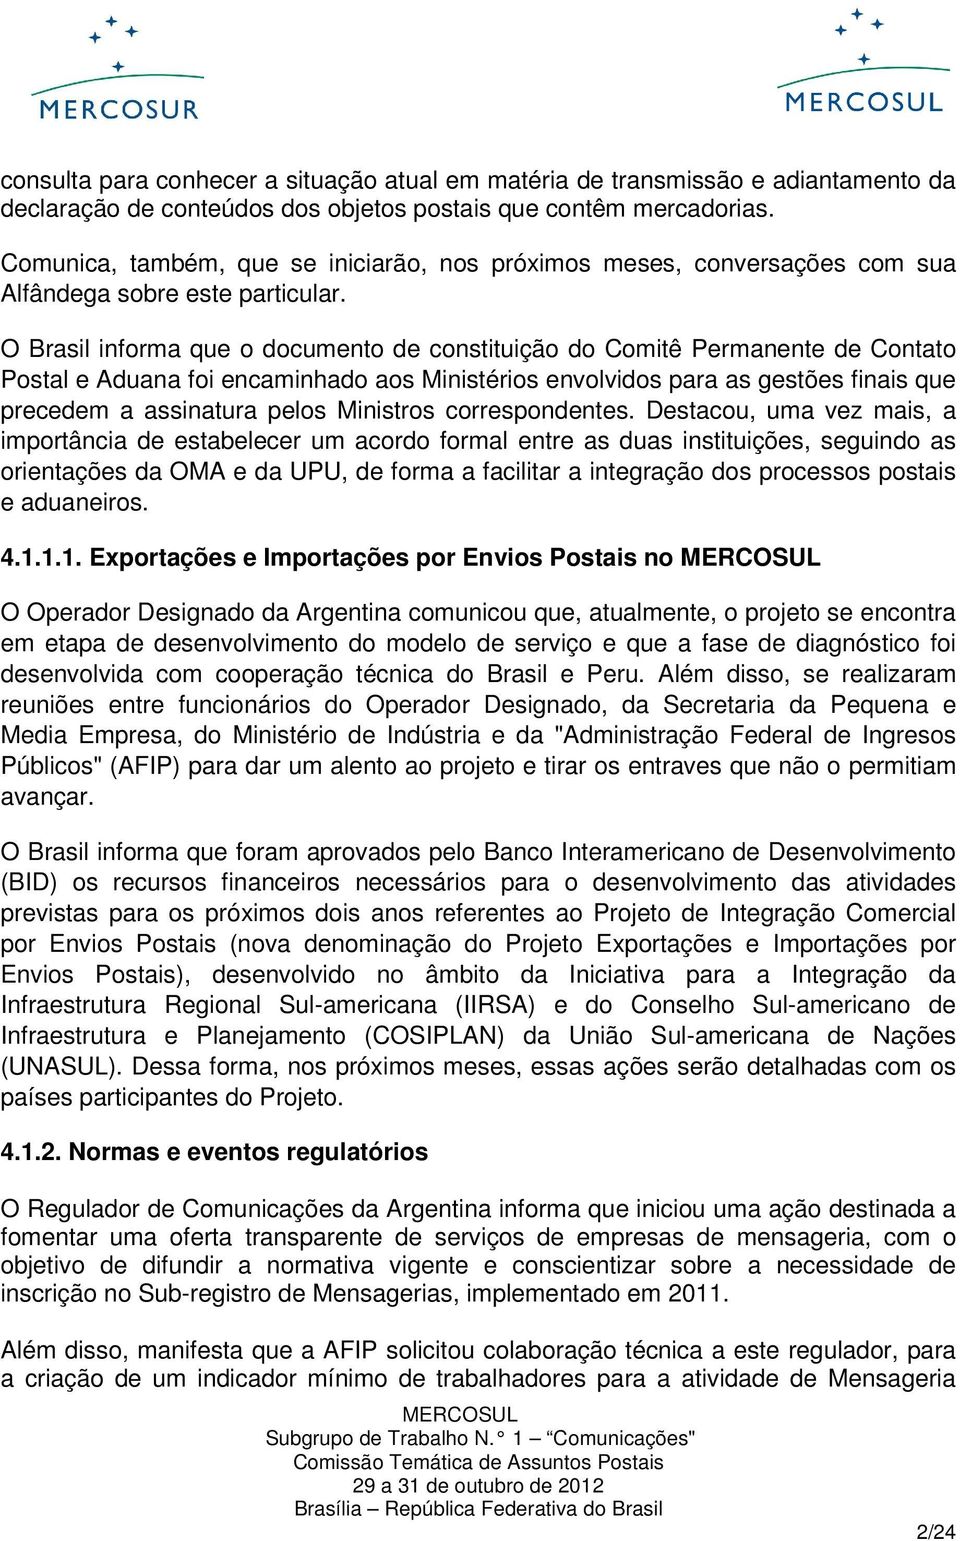 O Brasil informa que o documento de constituição do Comitê Permanente de Contato Postal e Aduana foi encaminhado aos Ministérios envolvidos para as gestões finais que precedem a assinatura pelos